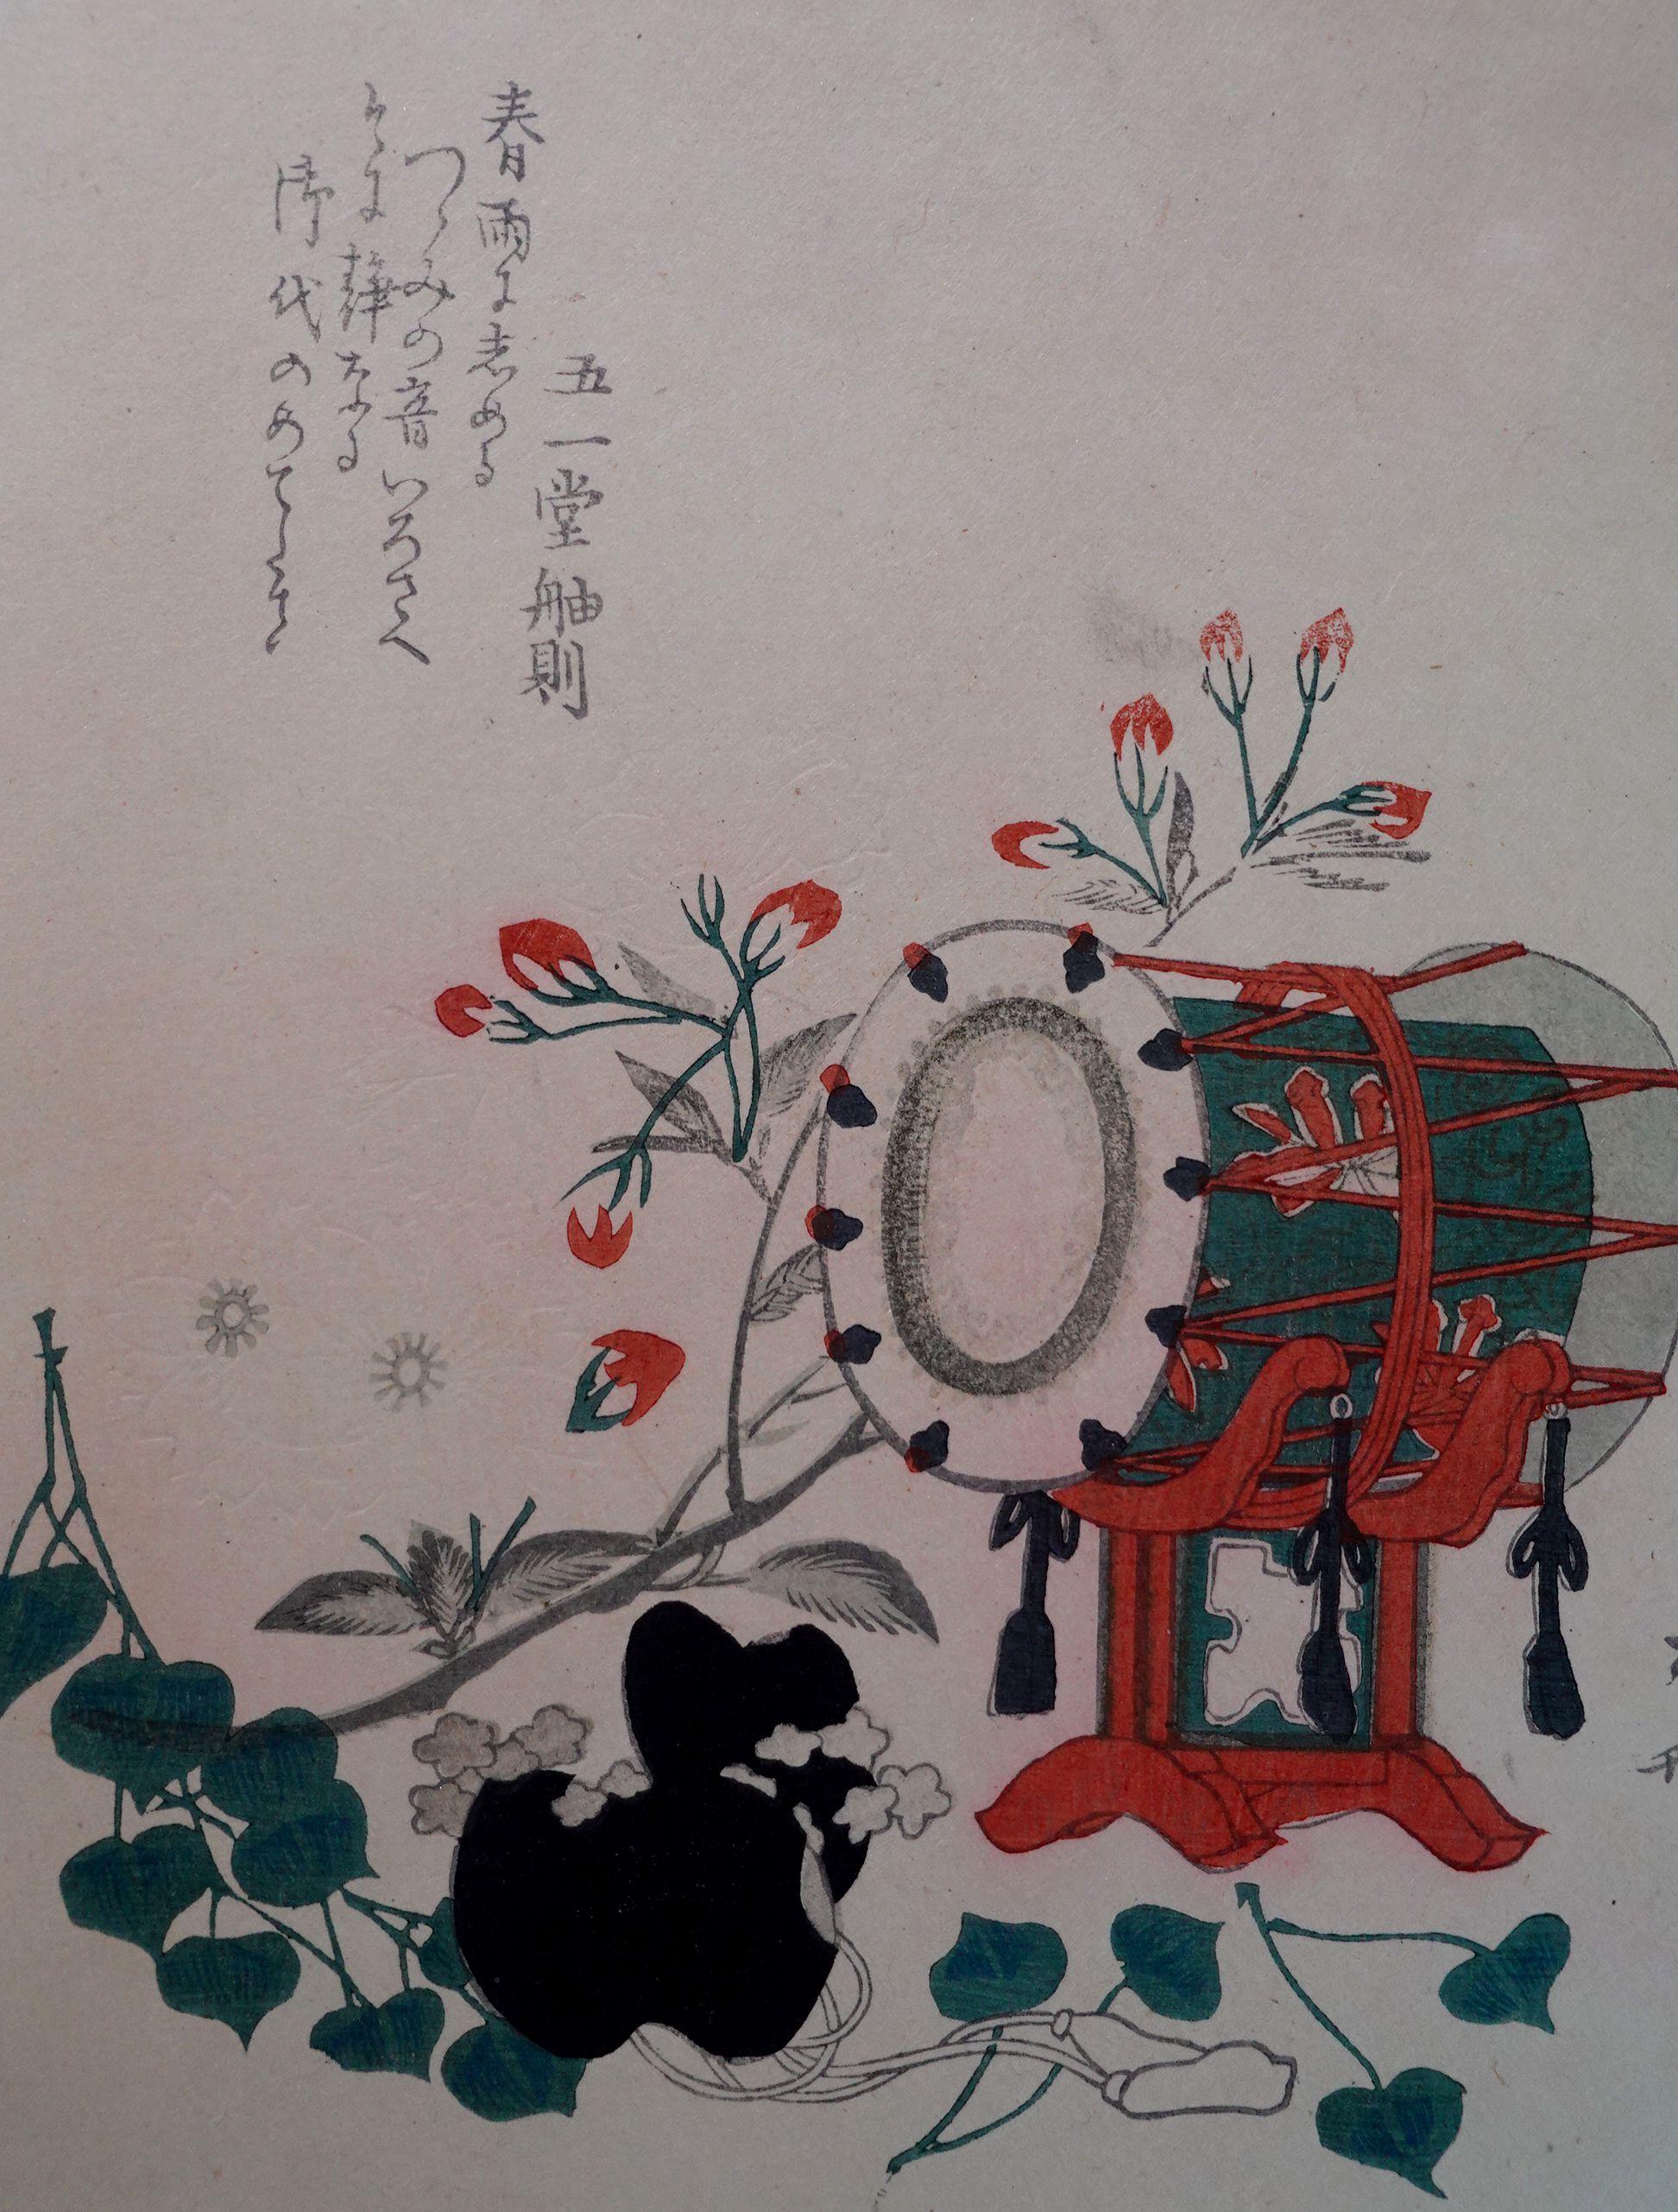 Original japanischer Farbholzschnitt von Hokusai Katsushika, 葛飾北齋 '1760-1849'.

Über den Künstler

Der japanische Künstler Hokusai Katsushika wurde in Edo als Tamekazu Nakajima geboren. Hokusai, der von dem Spiegelmacher Ise Nakajima adoptiert